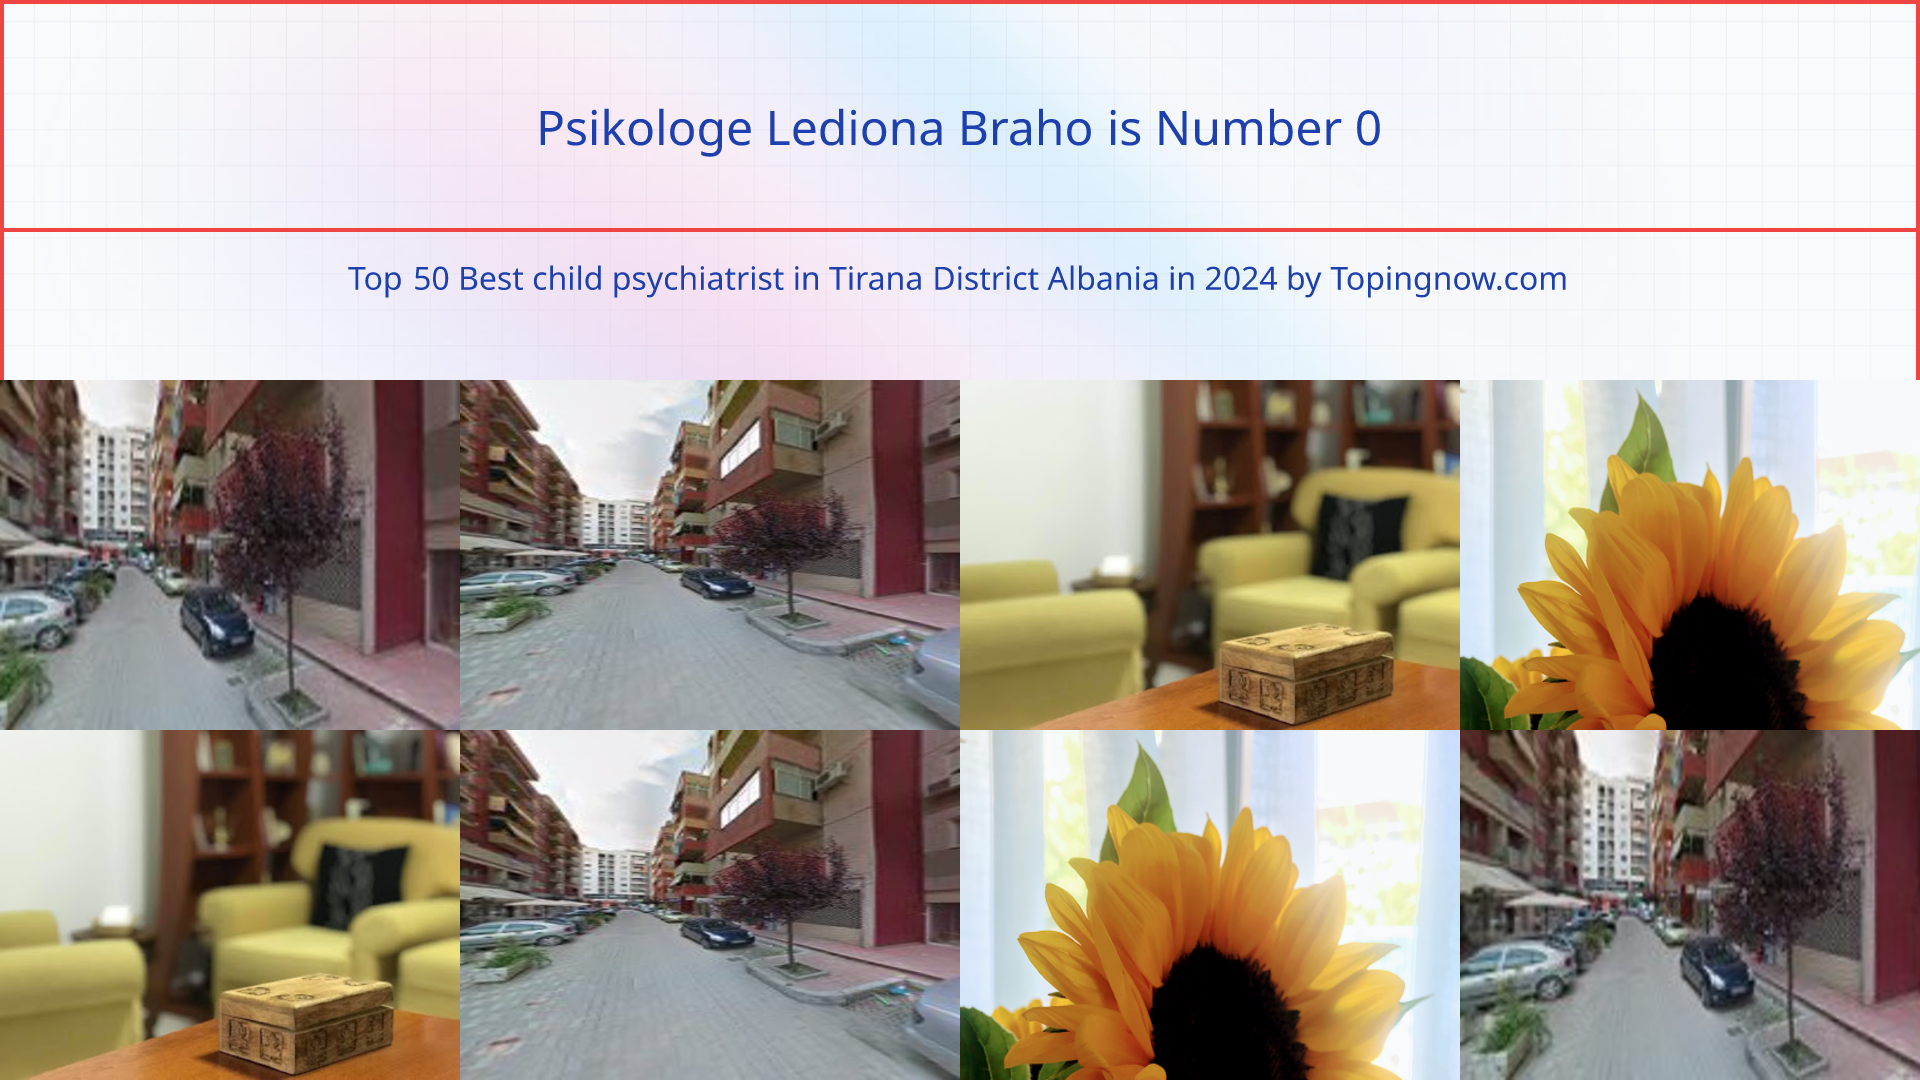 Psikologe Lediona Braho: Top 50 Best child psychiatrist in Tirana District Albania in 2024